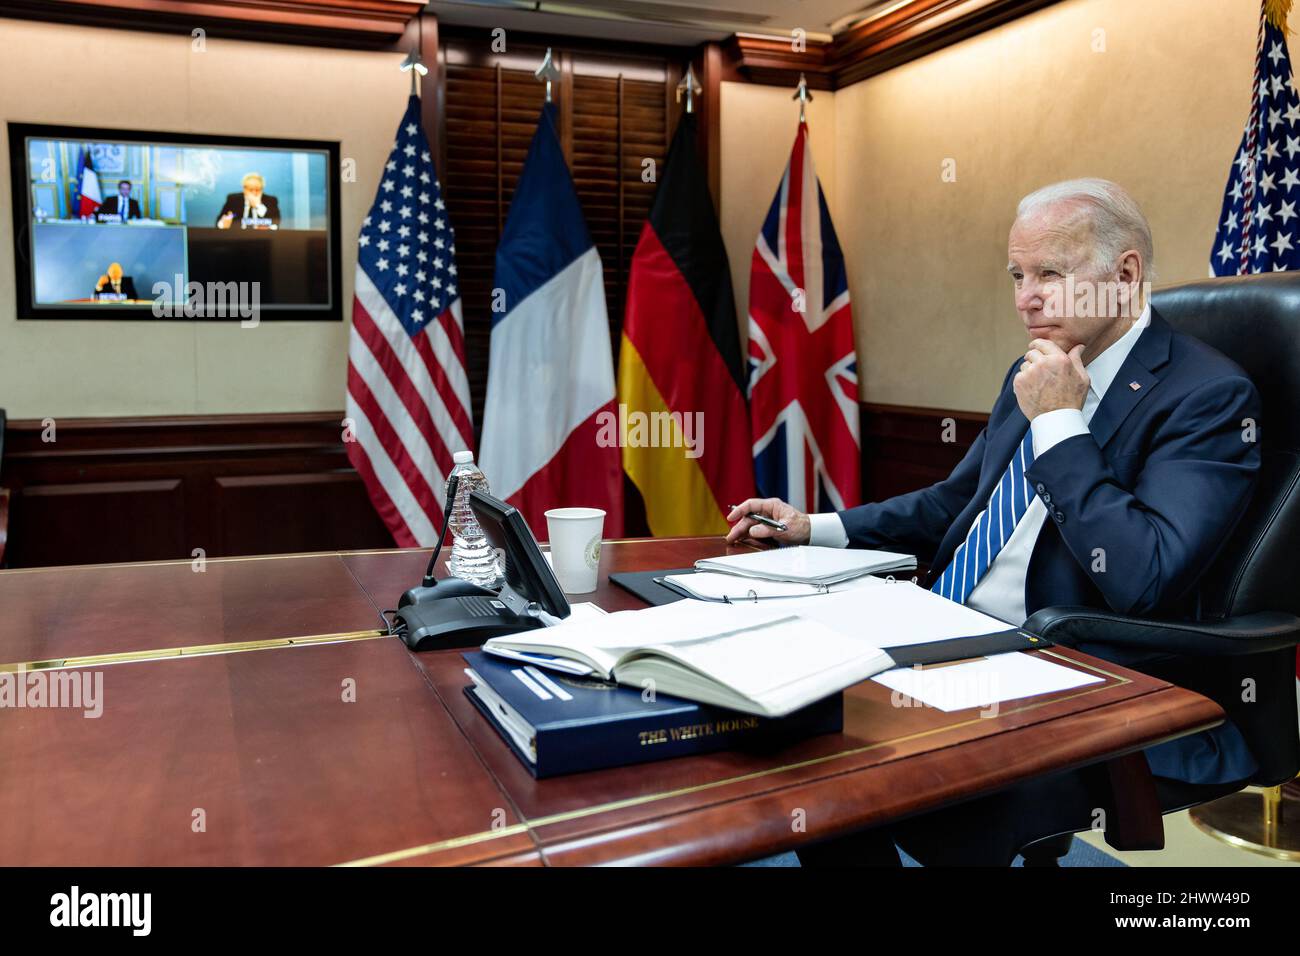 LE président AMÉRICAIN Joe Biden a organisé aujourd’hui un appel vidéo sécurisé avec le président Macron, le chancelier Scholz et le Premier ministre Johnson. Les dirigeants ont affirmé leur détermination à continuer d'augmenter le coût pour la Russie de son invasion injustifiée et injustifiée de l'Ukraine. Ils ont également souligné leur engagement à continuer de fournir à l'Ukraine une assistance sécuritaire, économique et humanitaire. En outre, ils ont discuté de leurs récents engagements respectifs avec les présidents ukrainien et russe. Banque D'Images